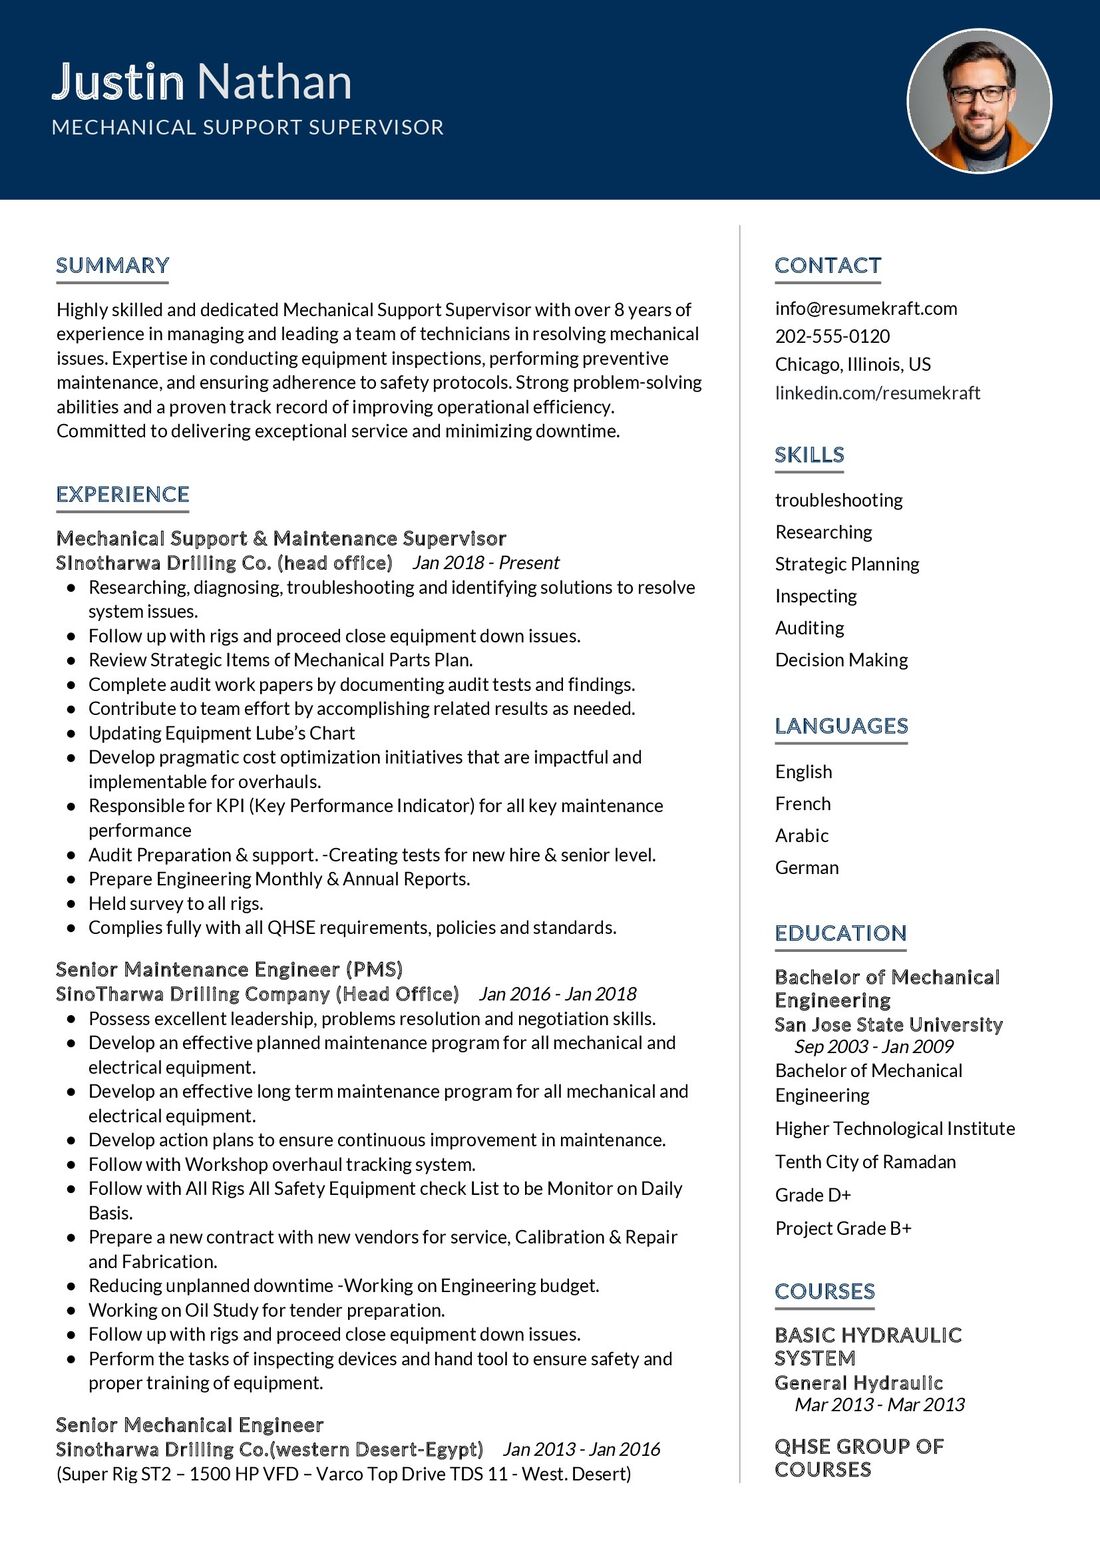 resume for mechanical supervisor